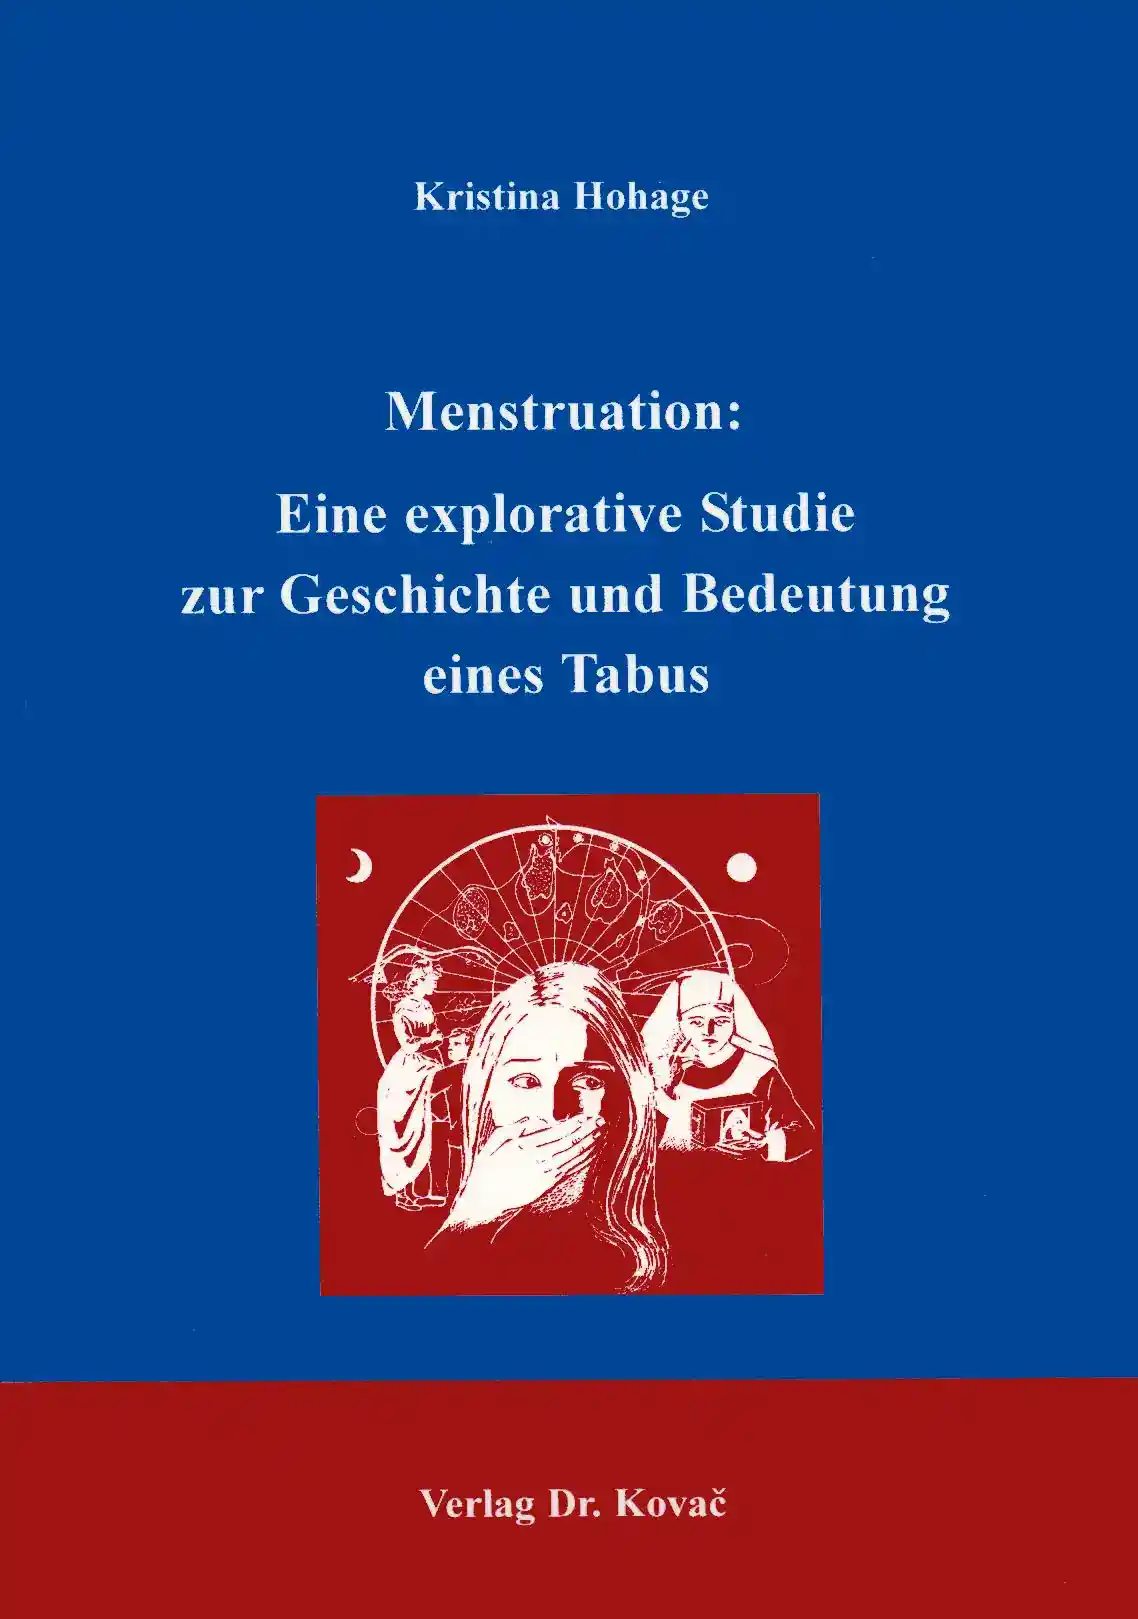 Menstruation: Eine explorative Studie zur Geschichte und Bedeutung eines Tabus (Doktorarbeit)